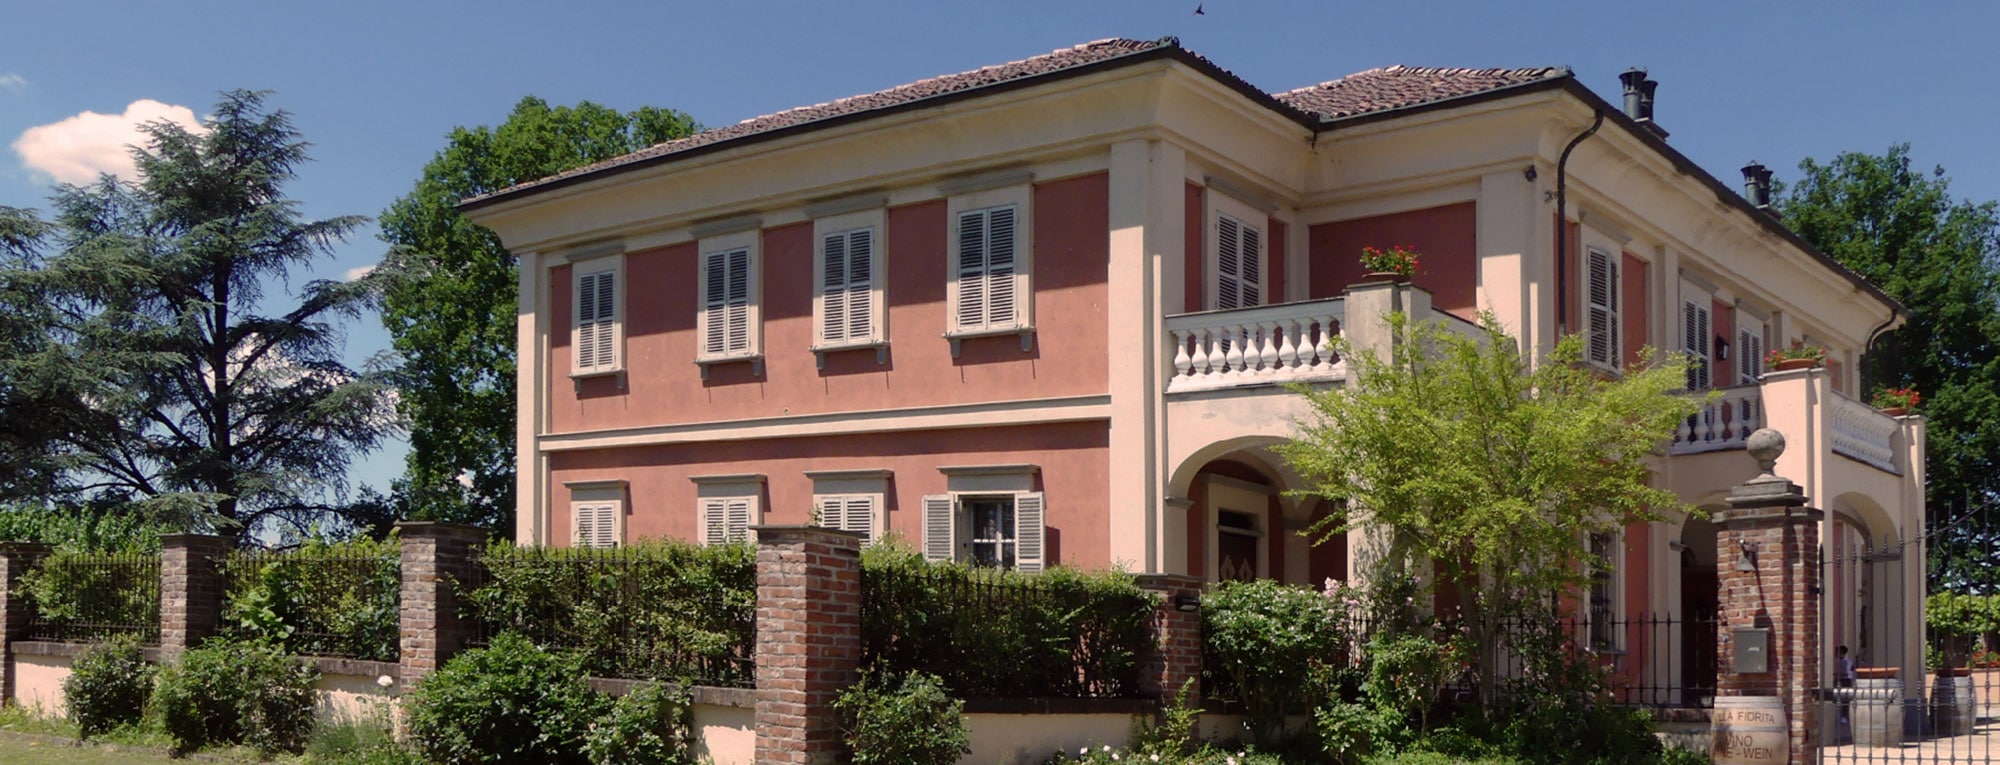 Villa Fiorita.